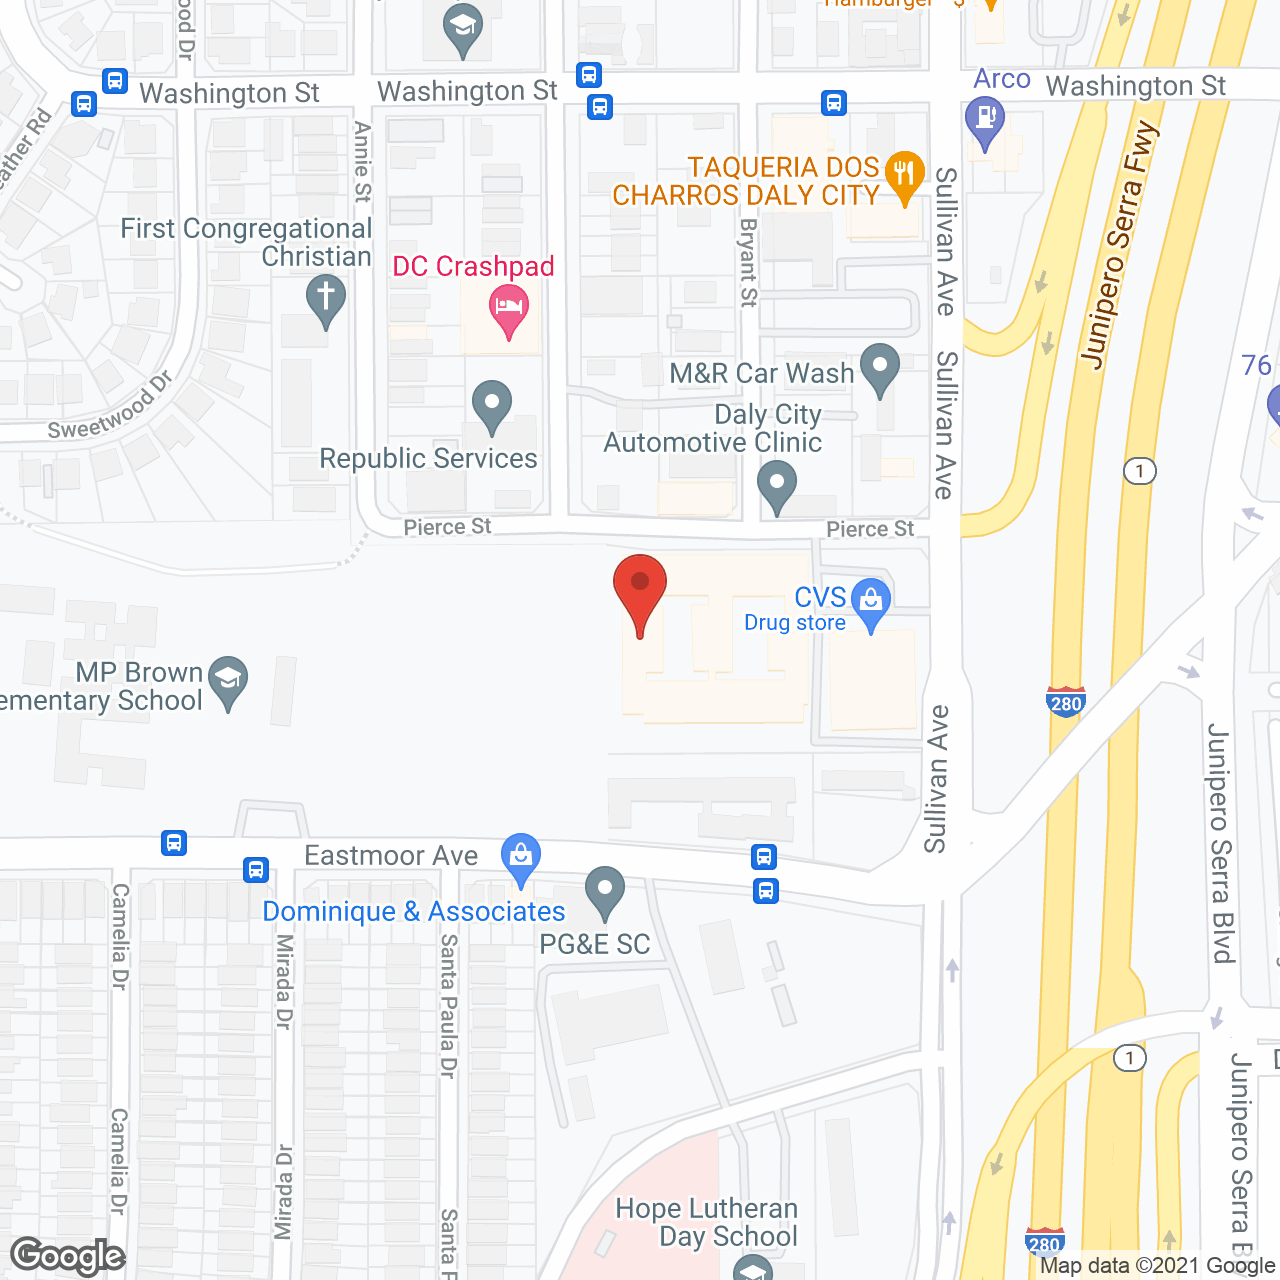 Peninsula Del Rey in google map